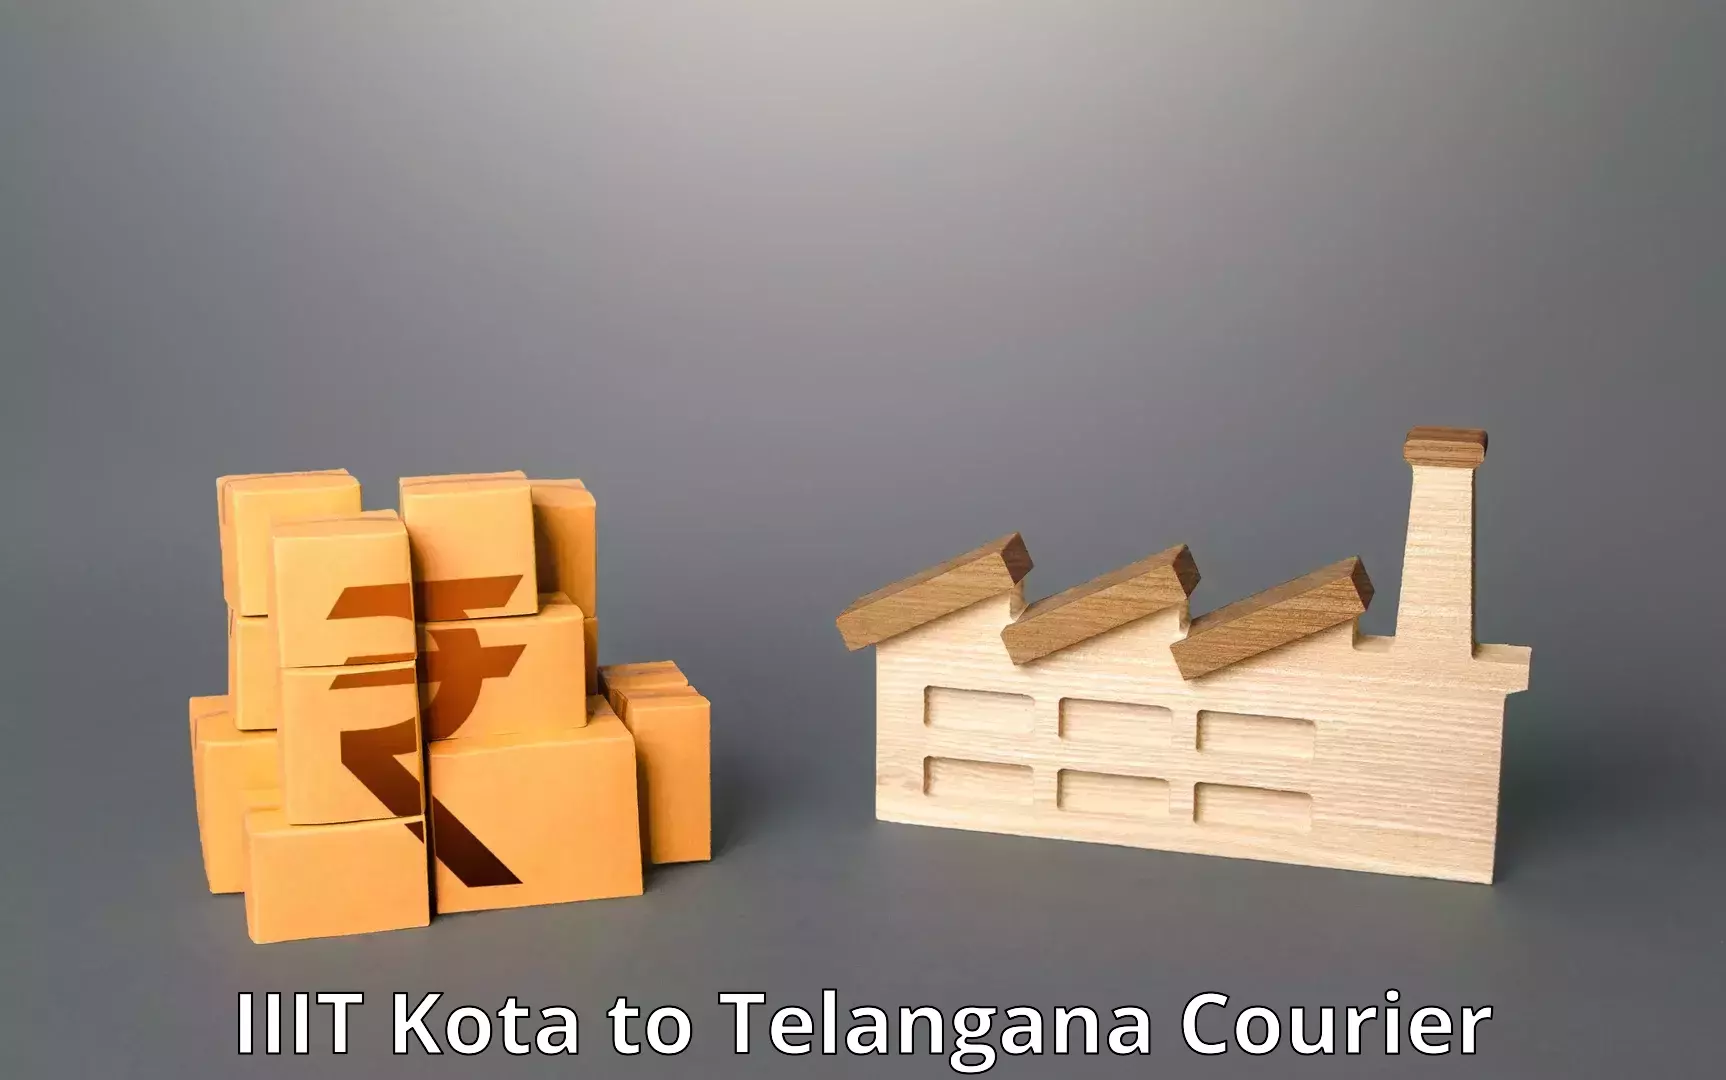 Tech-enabled shipping IIIT Kota to Telangana